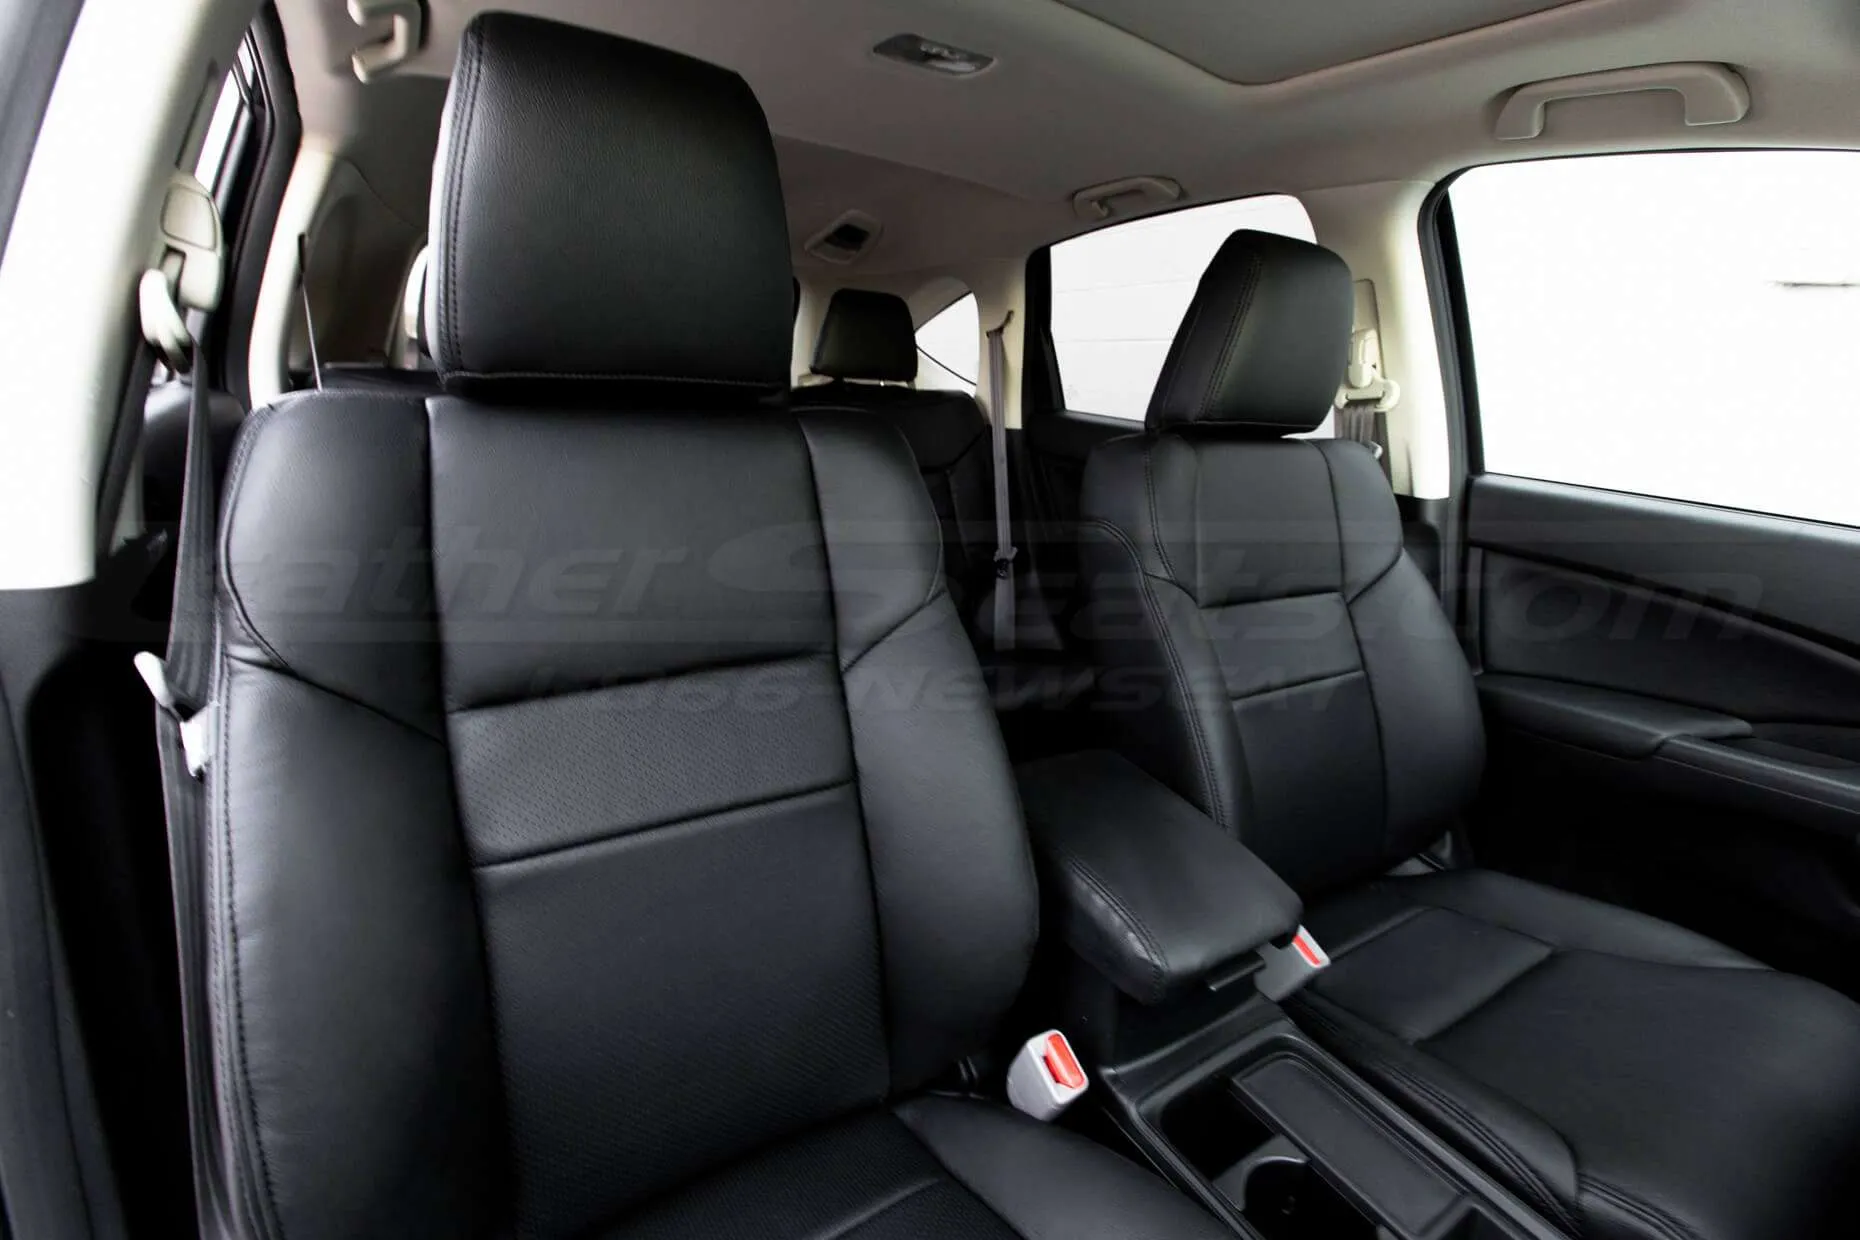 Honda CRV Leather Seat Kit - Black - Installed - Front seat backrests